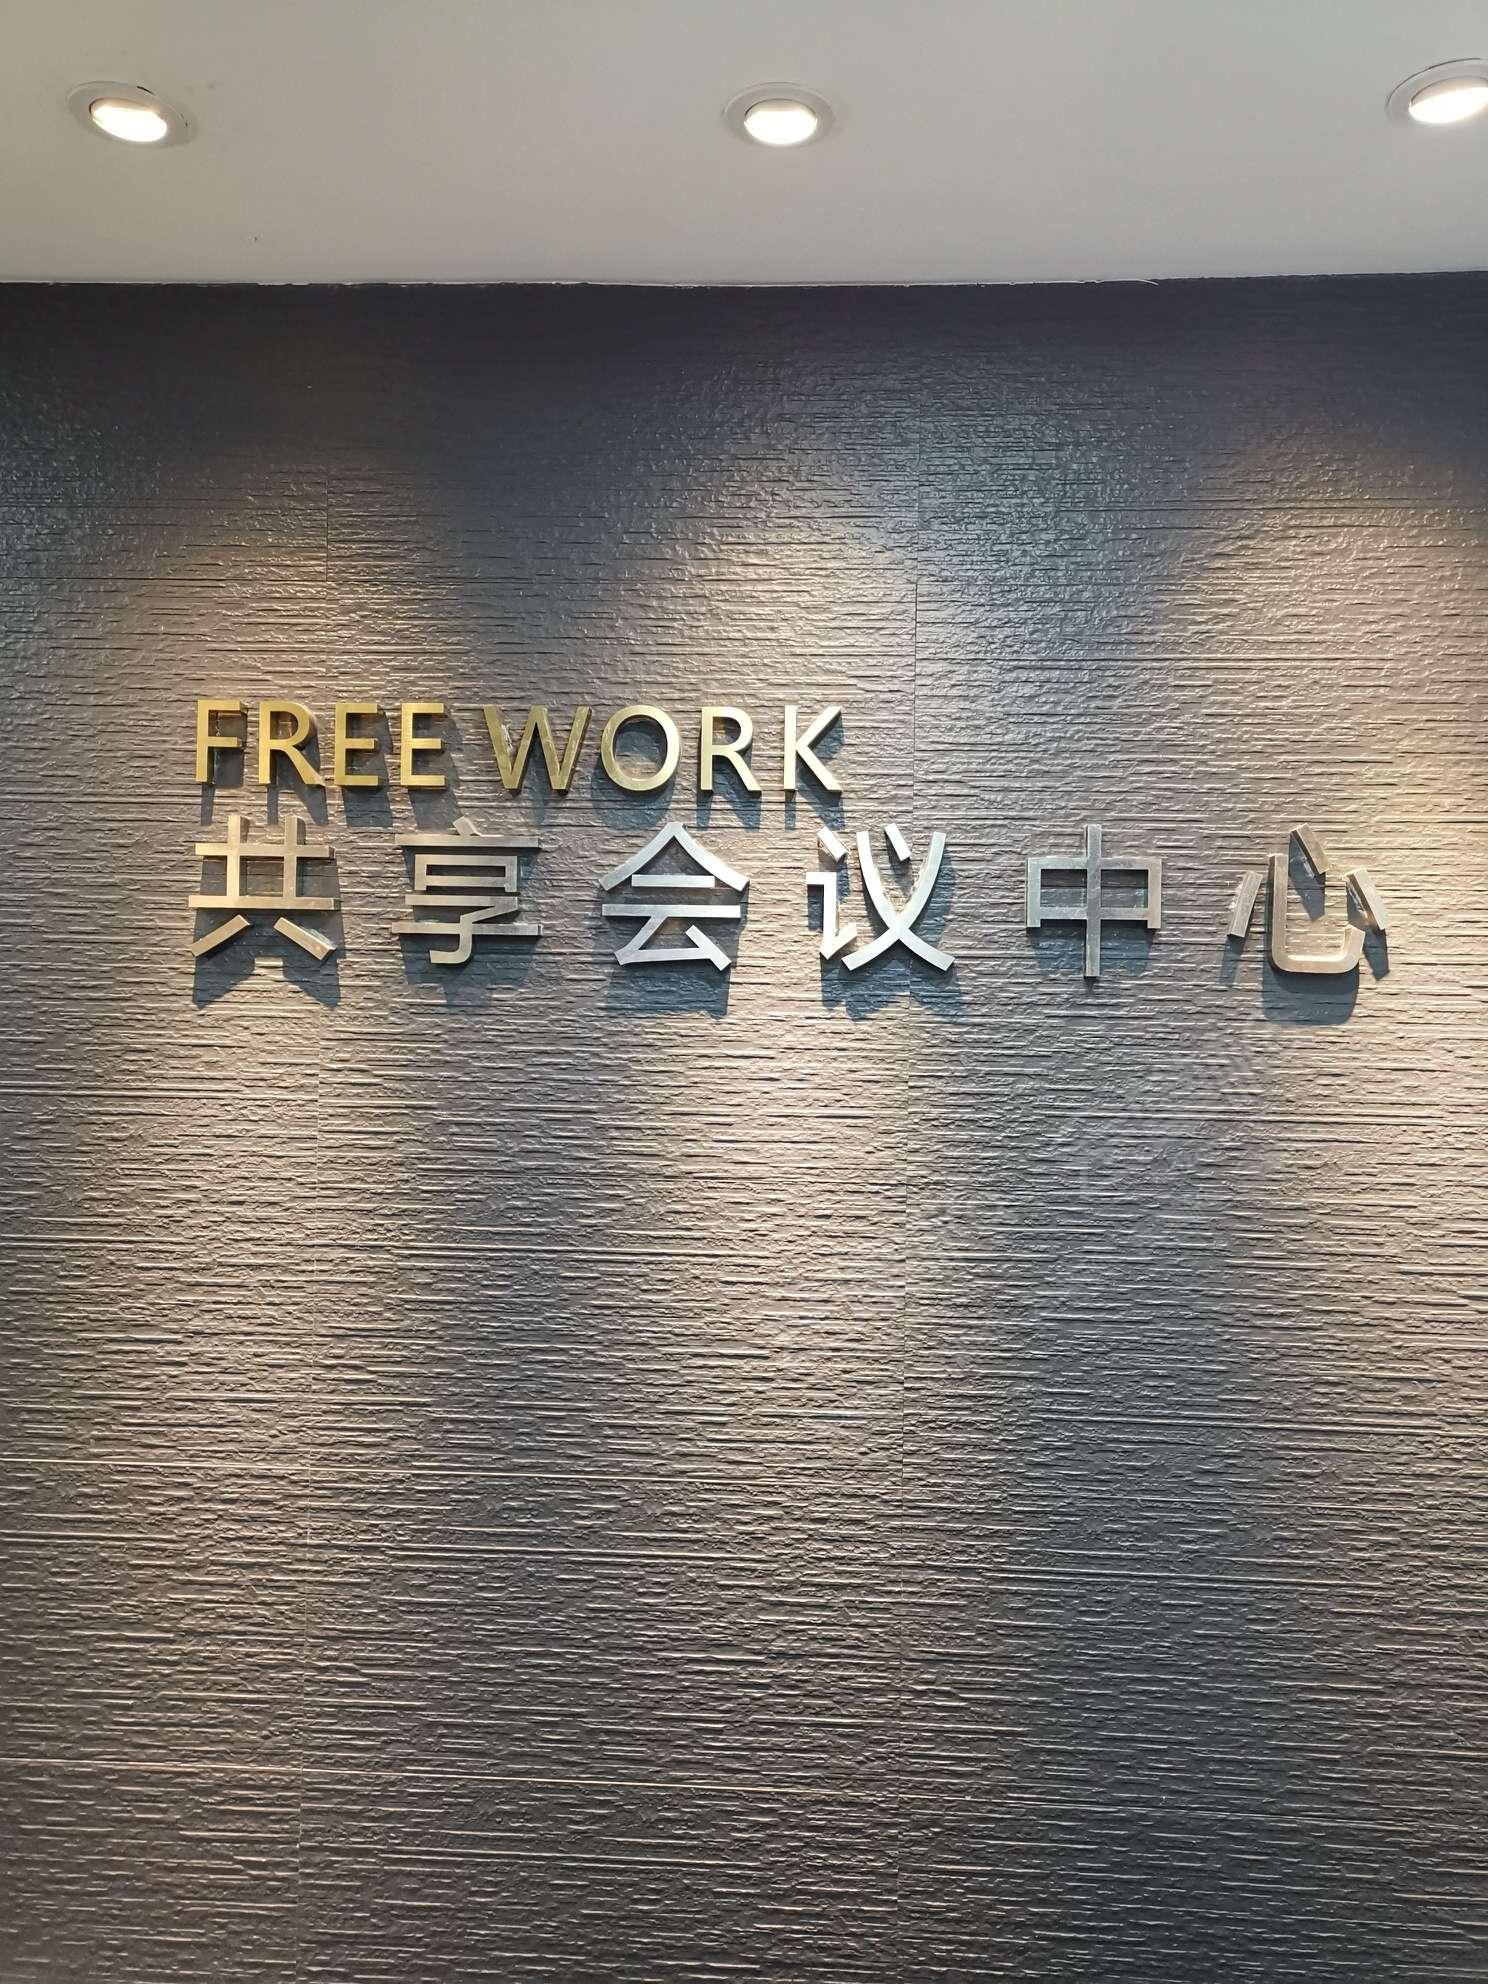 上海FREE WORK共享会议中心